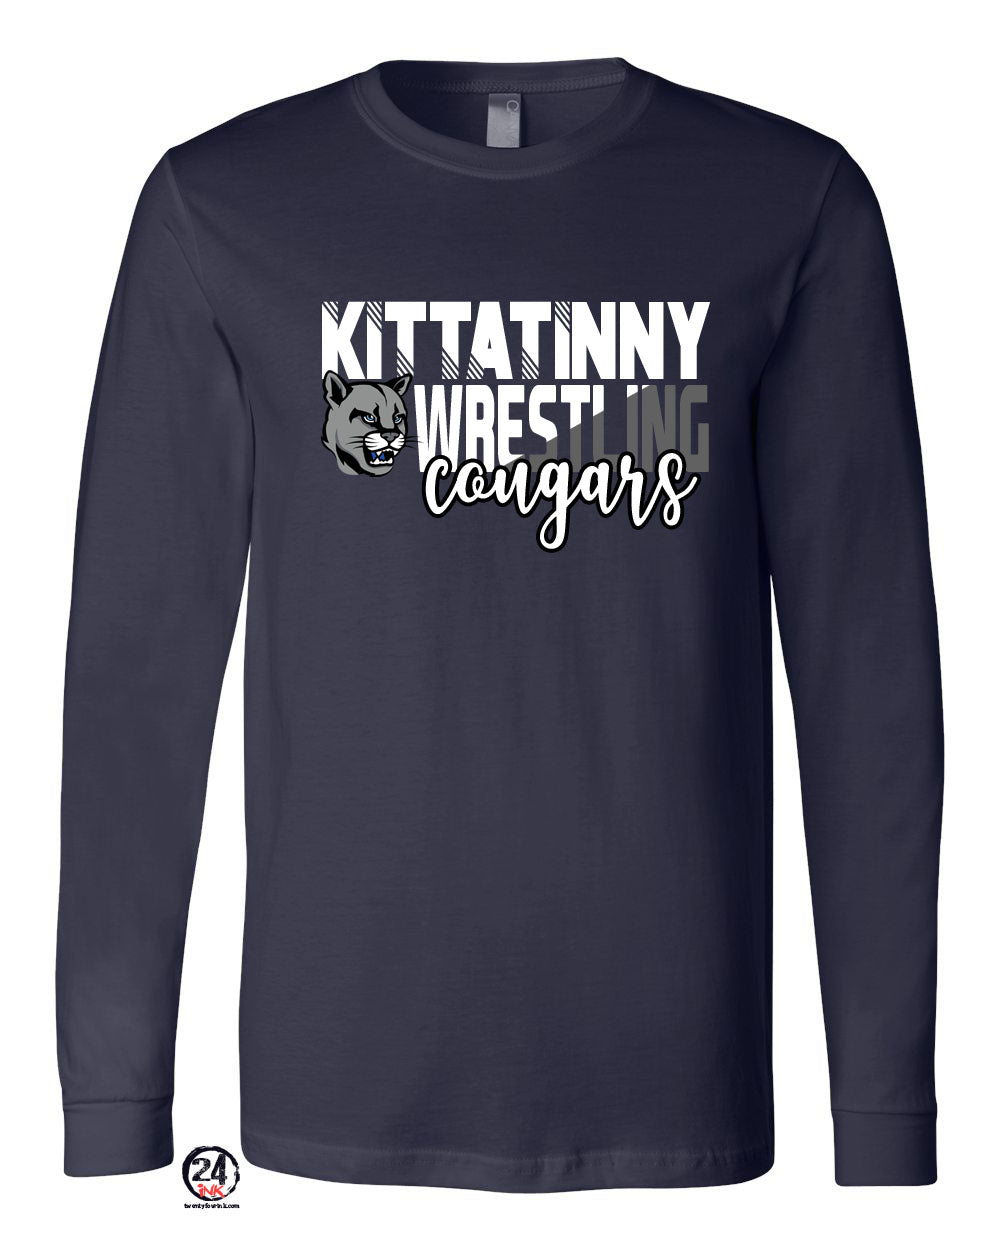 Kittatinny youth wrestling Design 4 Long Sleeve Shirt